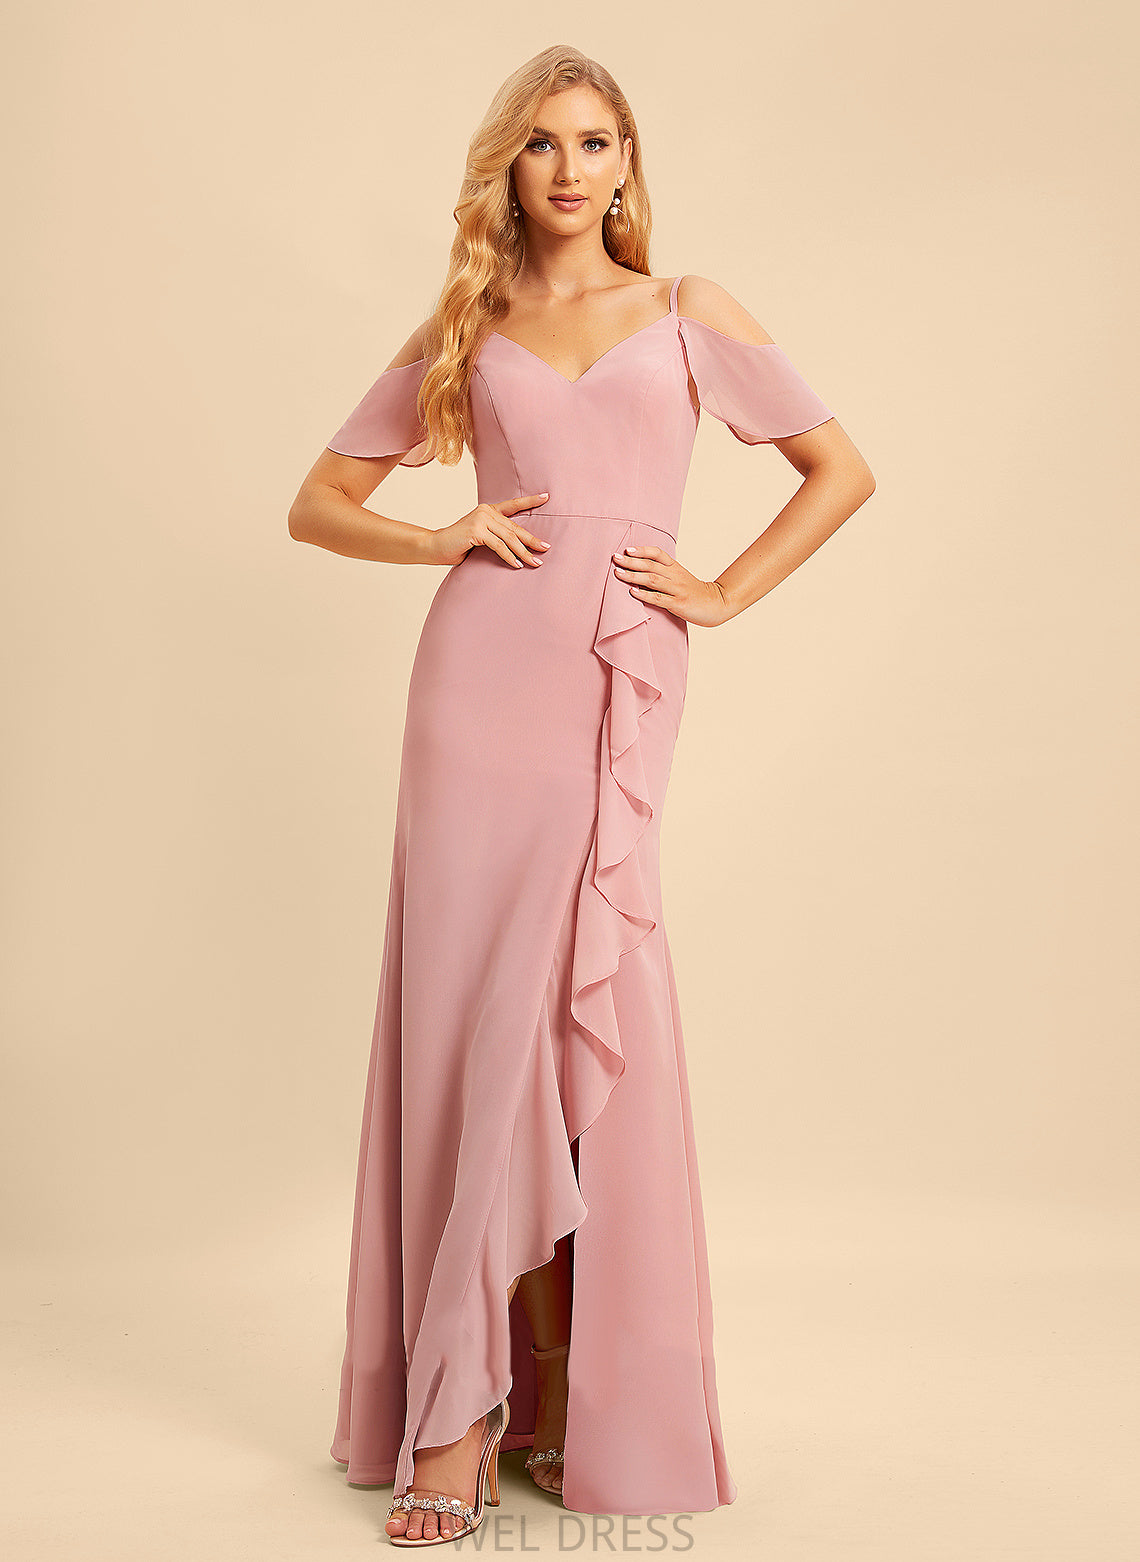 Silhouette Neckline V-neck Fabric Embellishment Length Floor-Length A-Line Ruffle SplitFront Alexandra Natural Waist Bridesmaid Dresses